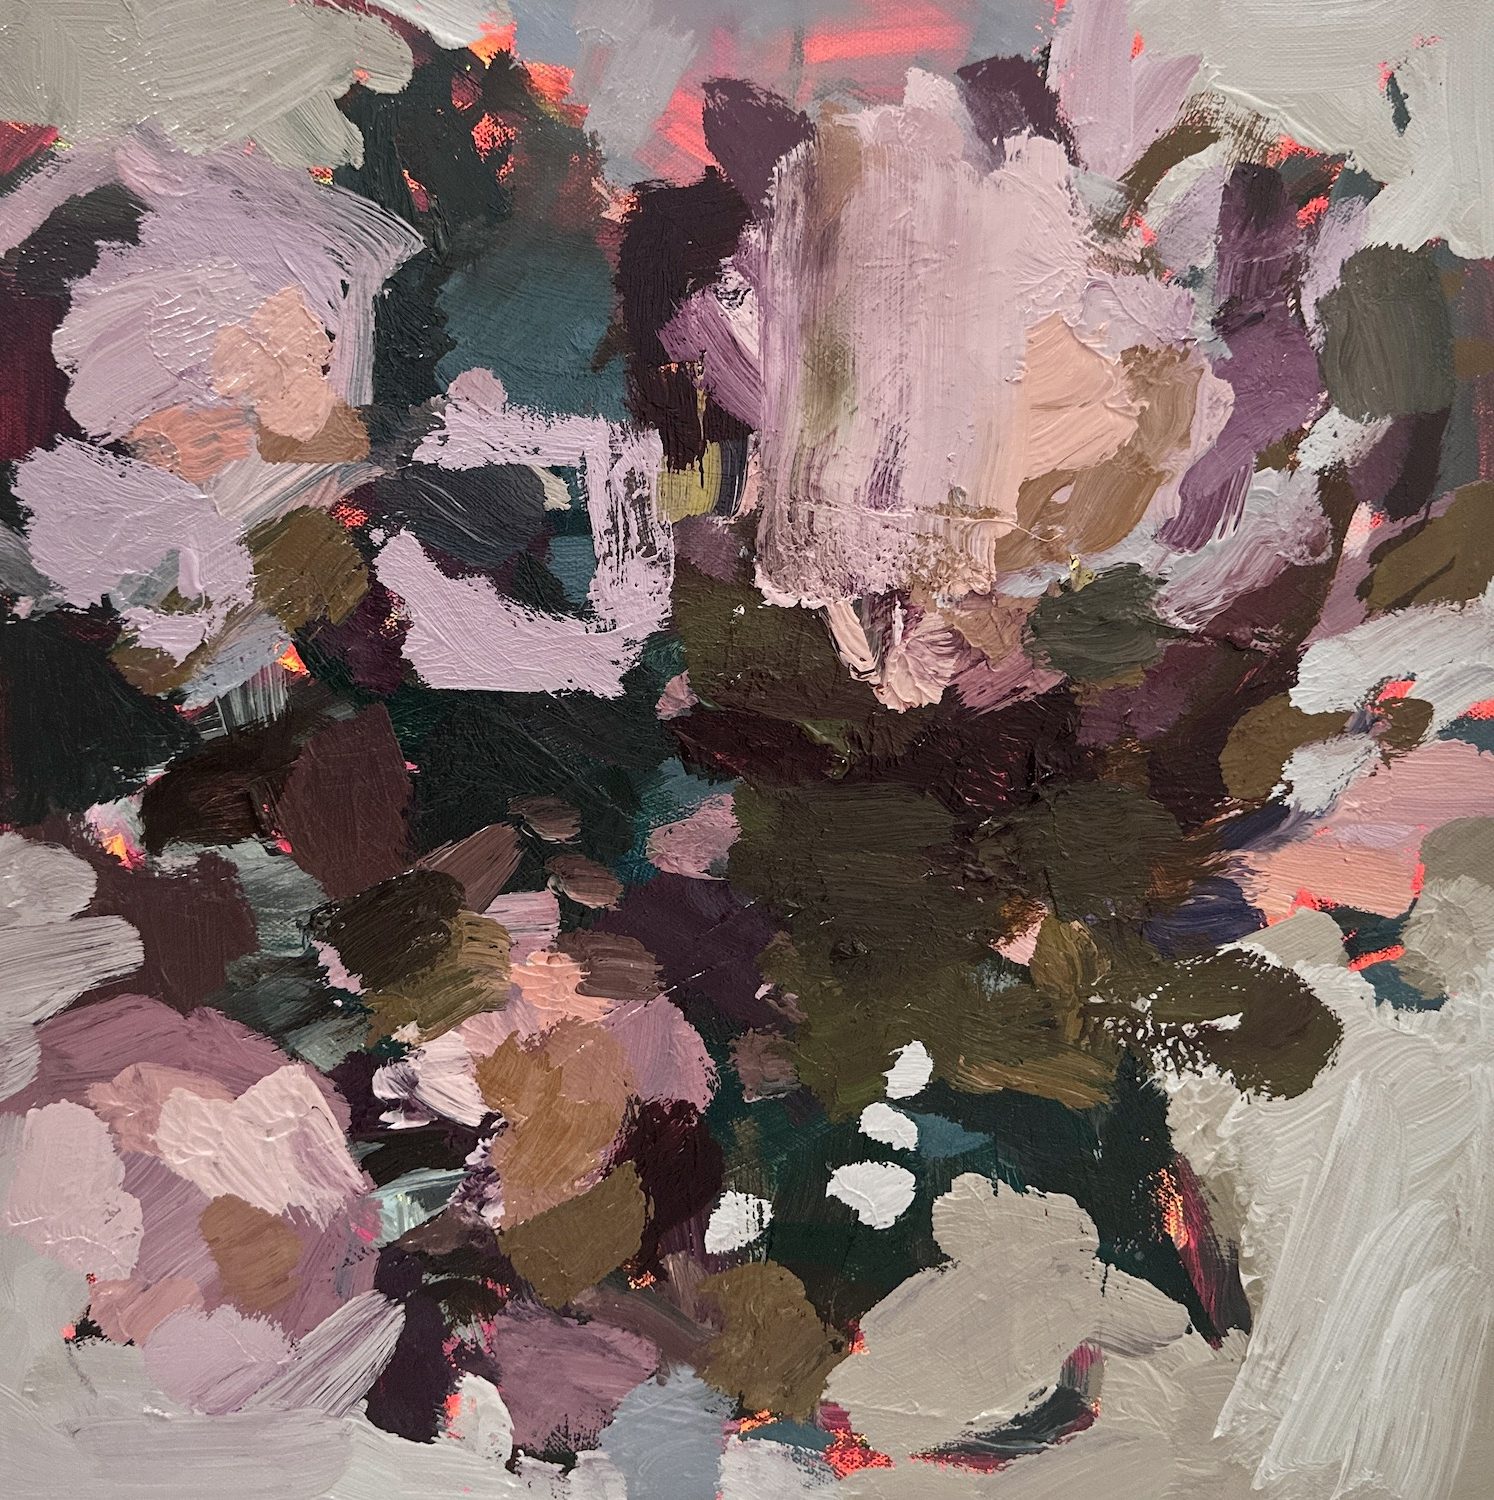 Llewellyn Skye 'Watch Me Bloom 4' 40x40cm acrylic & oil on canvas $2,000